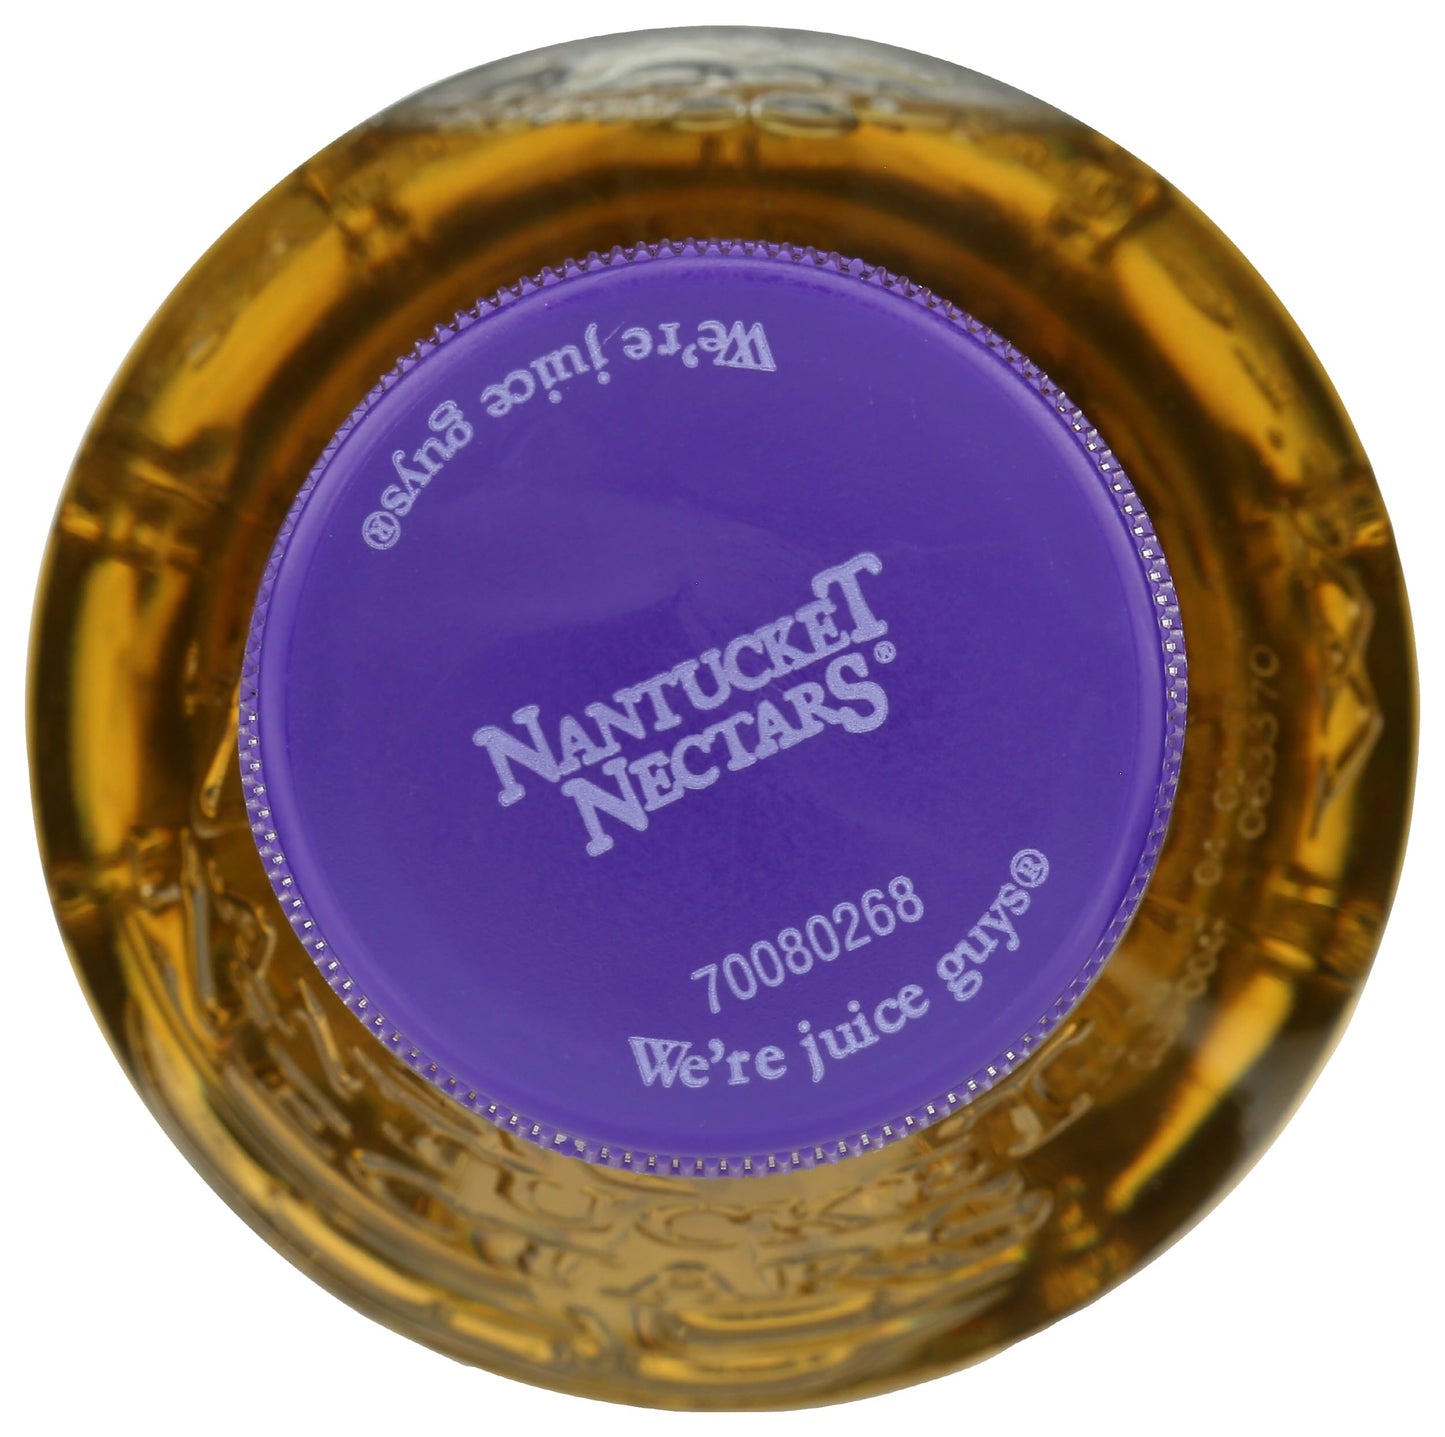 NANTUCKET NECTARS Orchard Apple Juice, 15.9 FZ